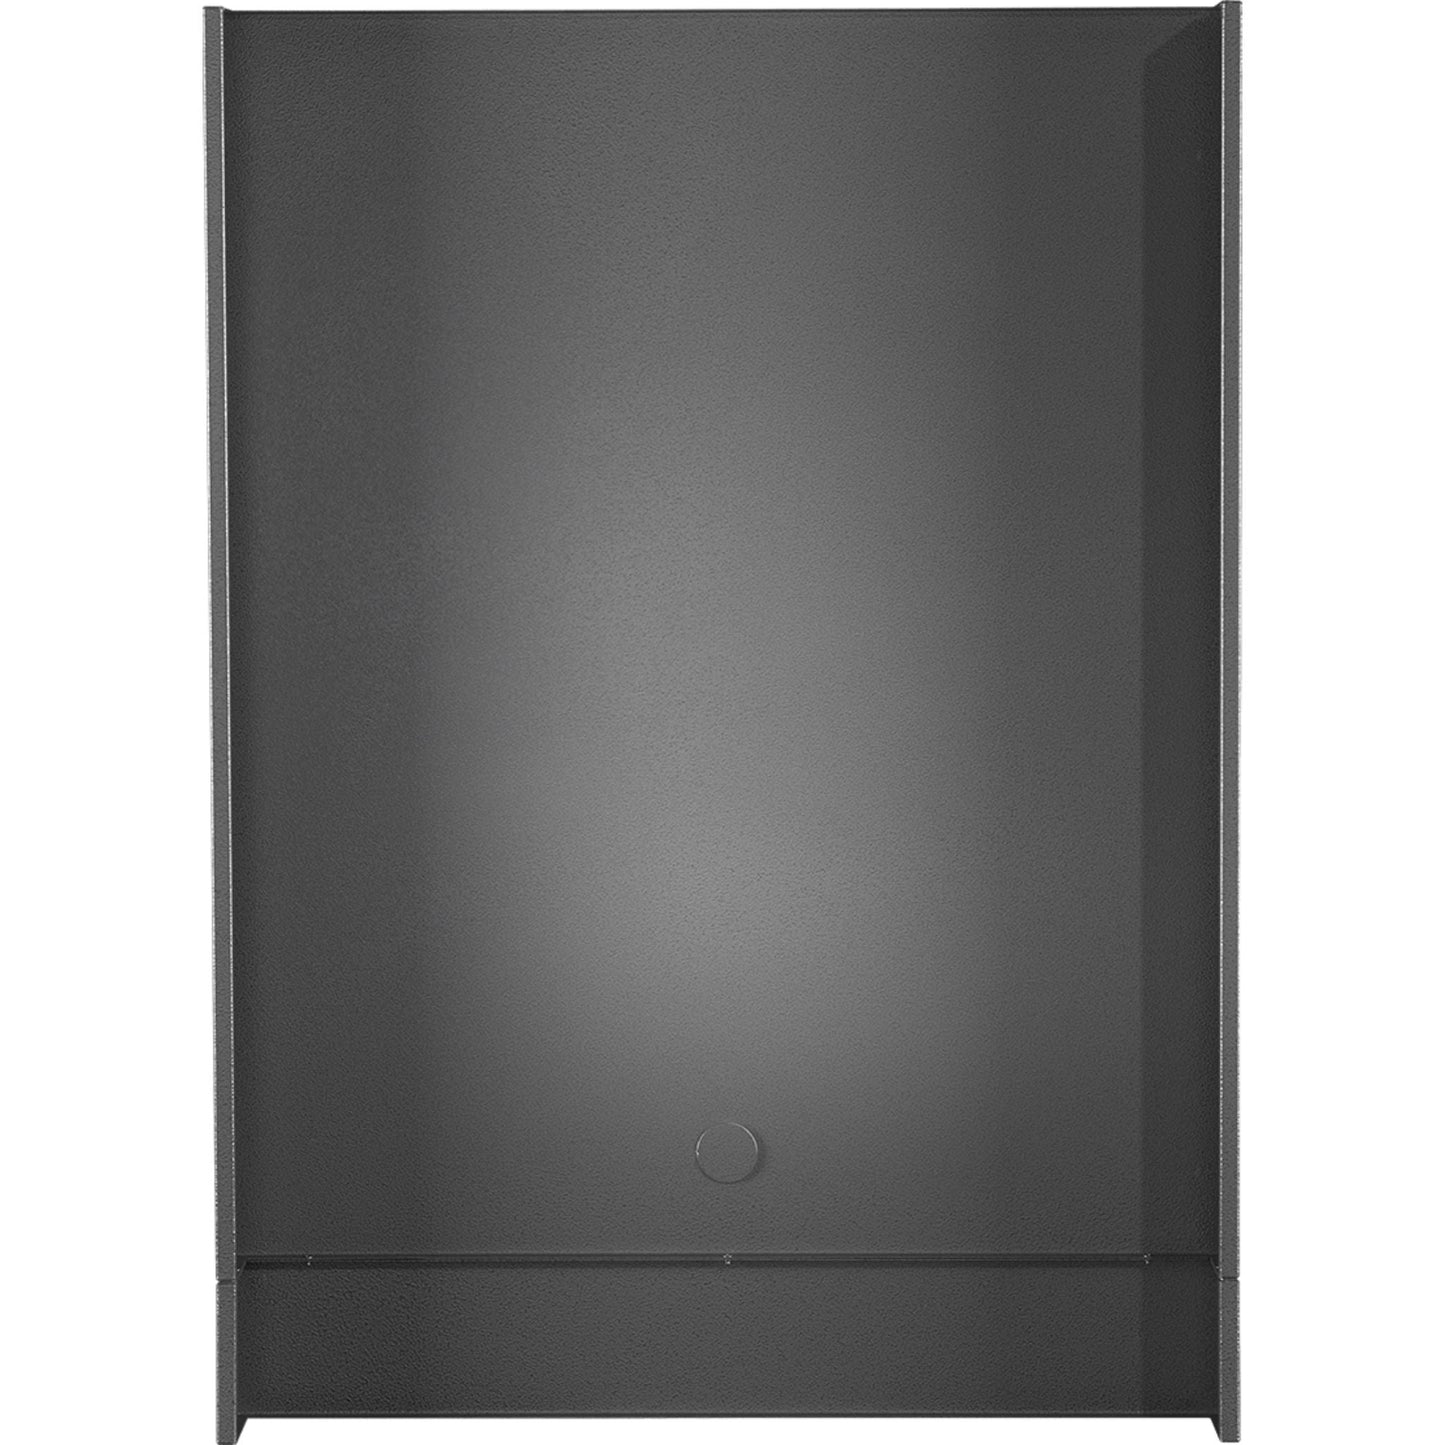 oasis-double-fridge-end-panel